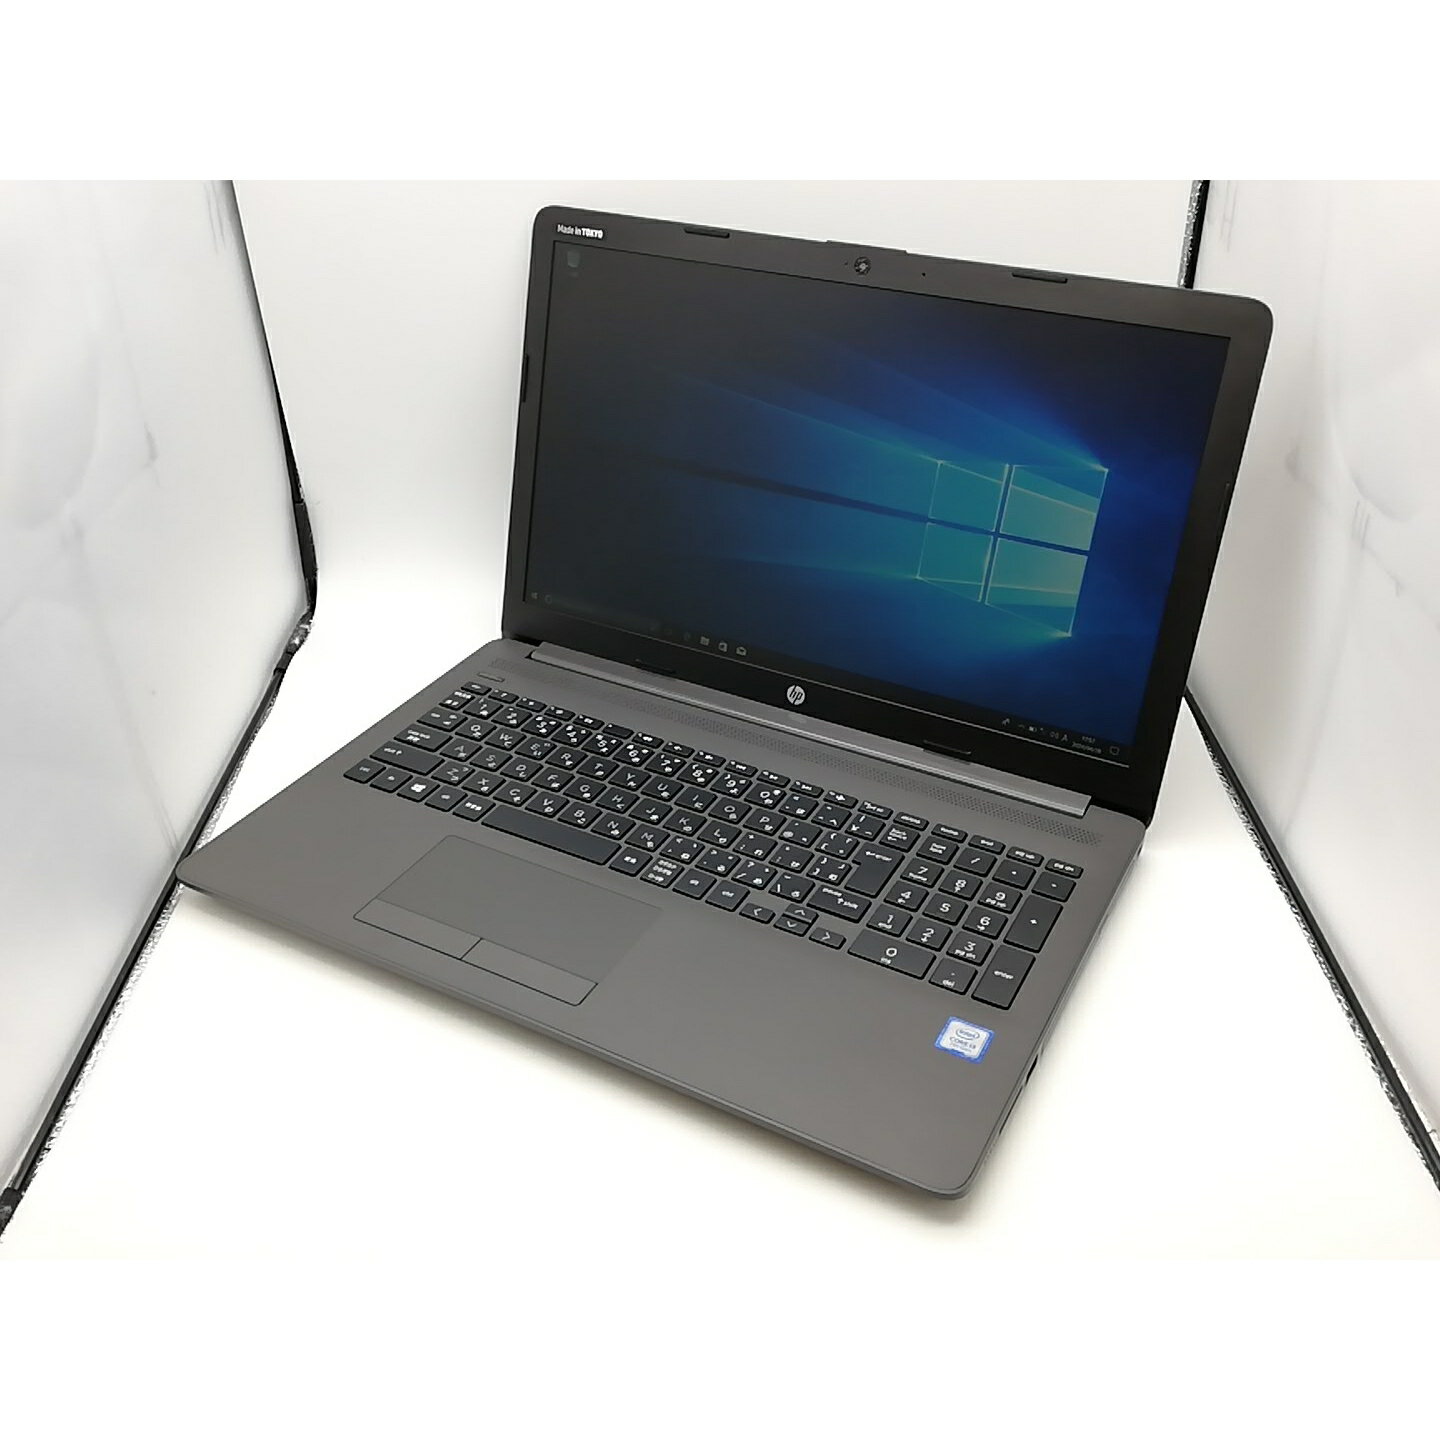 šHP HP 250 G7/CT Notebook PC i3-7020U 4G 128G(SSD) DVDMulti WiFi 15LCD(1920x1080) Win10HۡڼĮݾڴ1ڥA